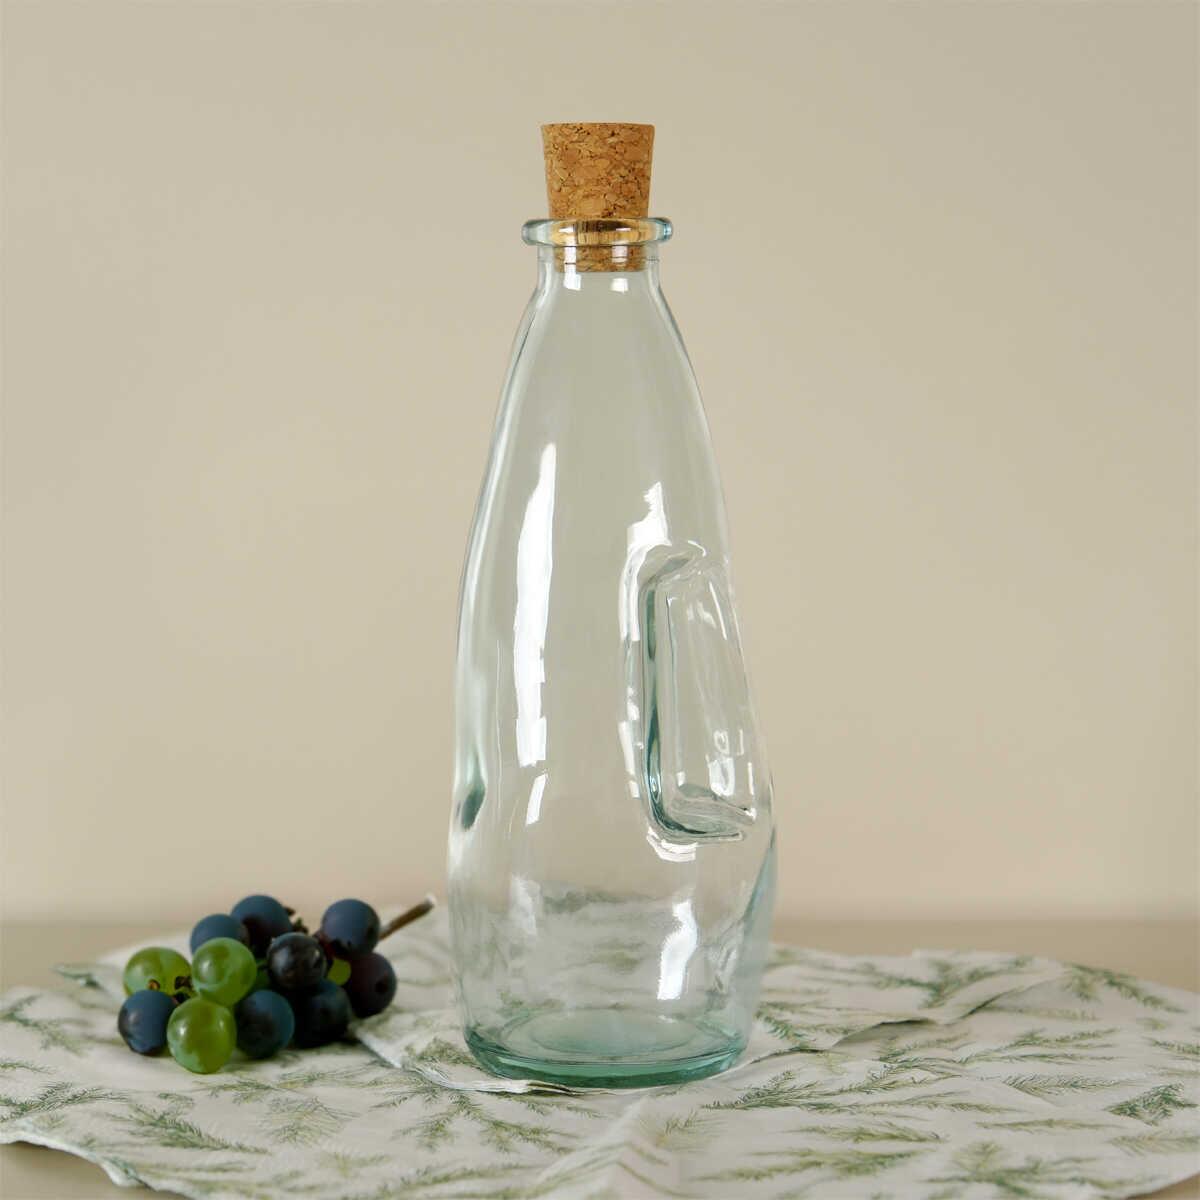 Sanmiguel Oil Vinegar Bottle 300 cc 1